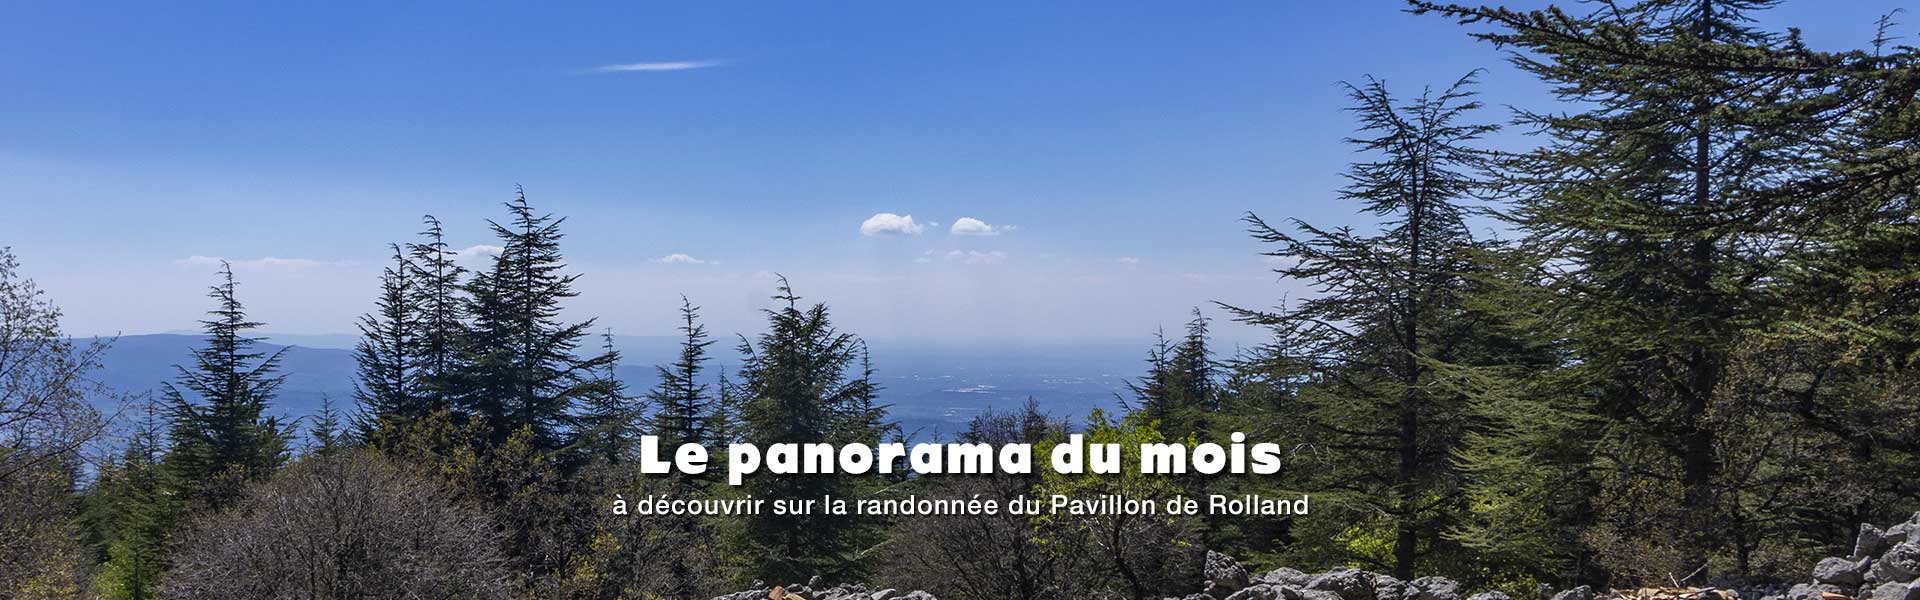 Panorama à découvrir sur la randonnée du Pavillon de Rolland au pied du versant Sud du mont Ventoux dans le Vaucluse